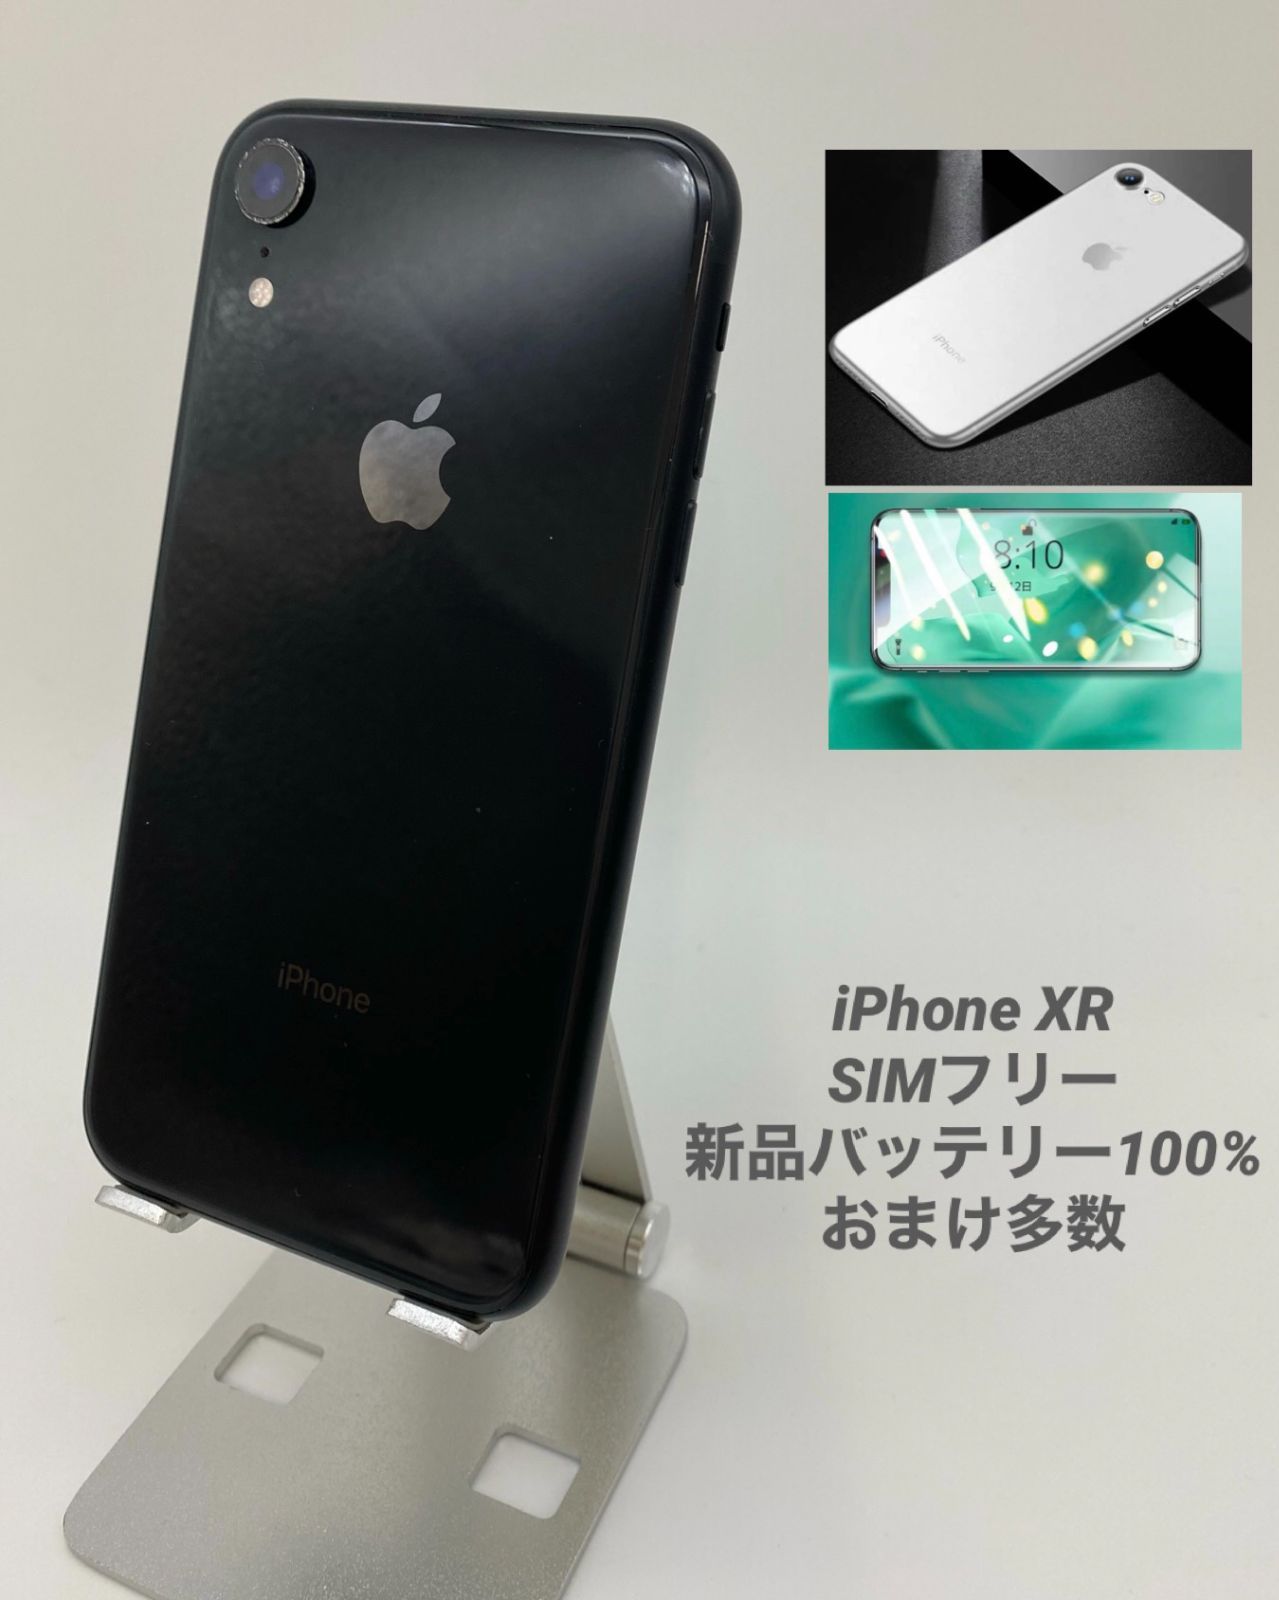 iPhoneXR 64GB black デュアルSIM化改造済み - スマートフォン/携帯電話